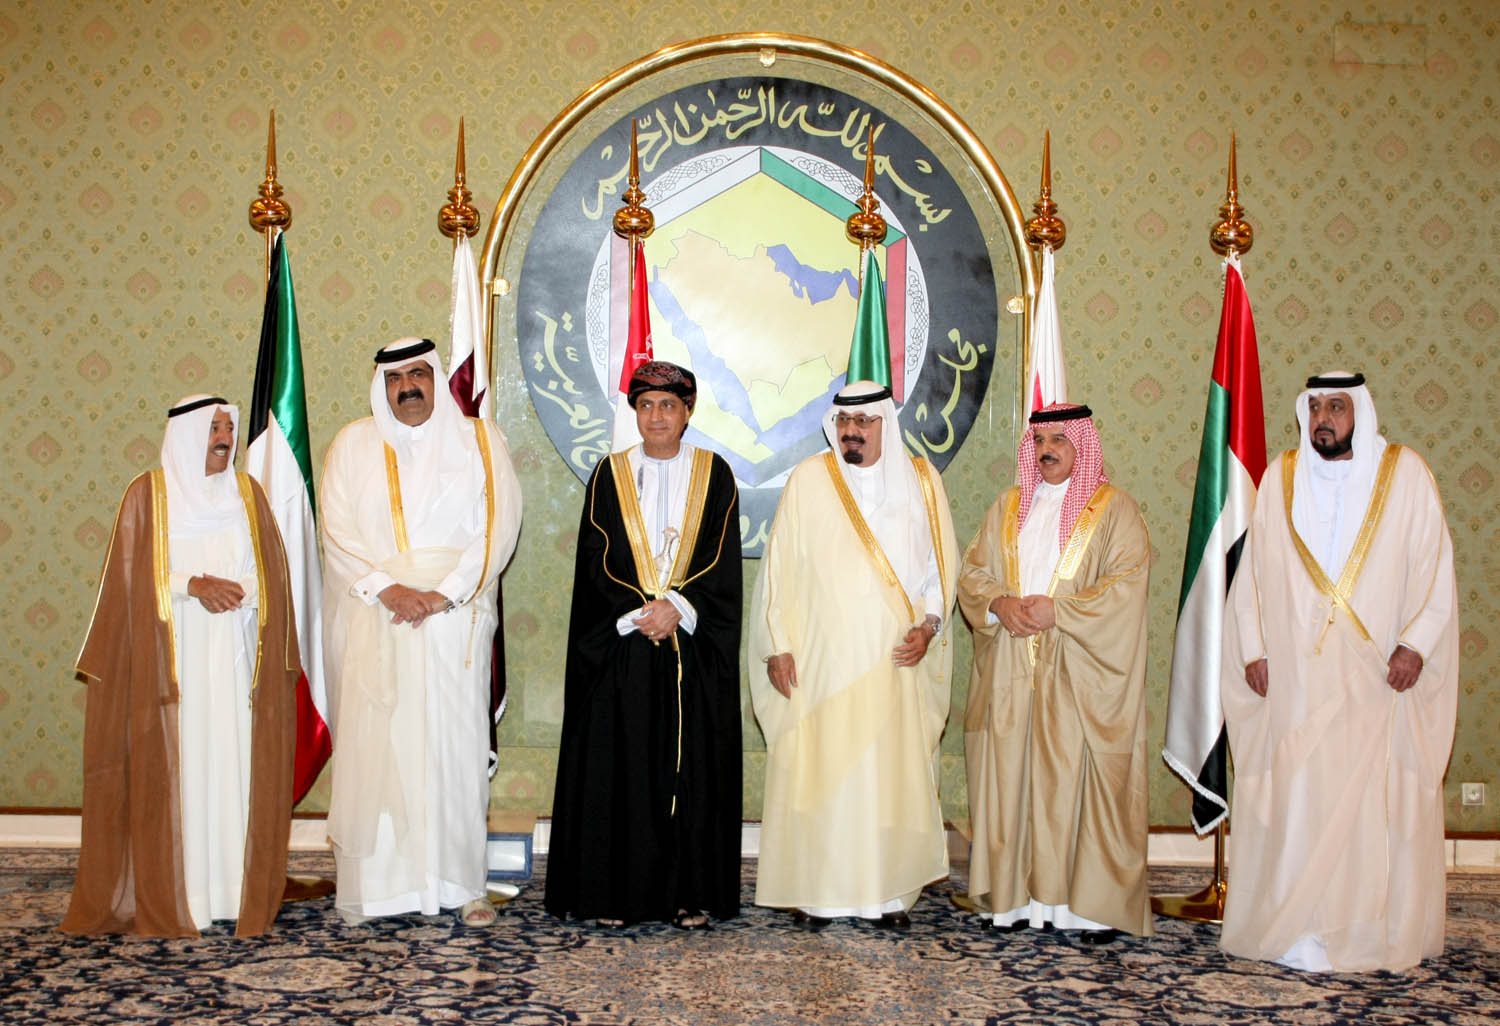  مجلس التعاون الخليجي يؤكد احترامه لإرادة وخيارات الشعب اليمني